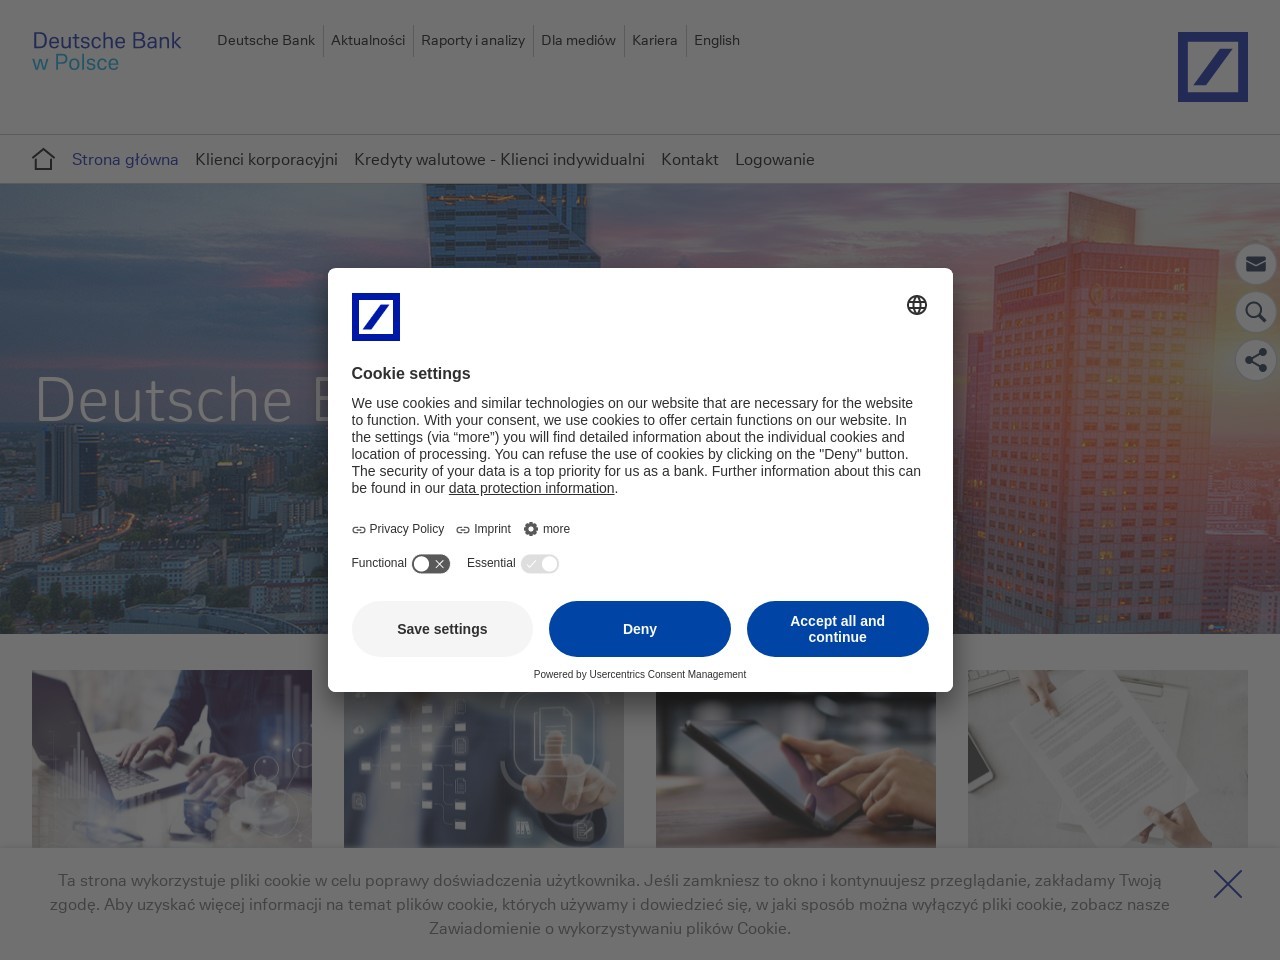 Strona główna - Deutsche Bank